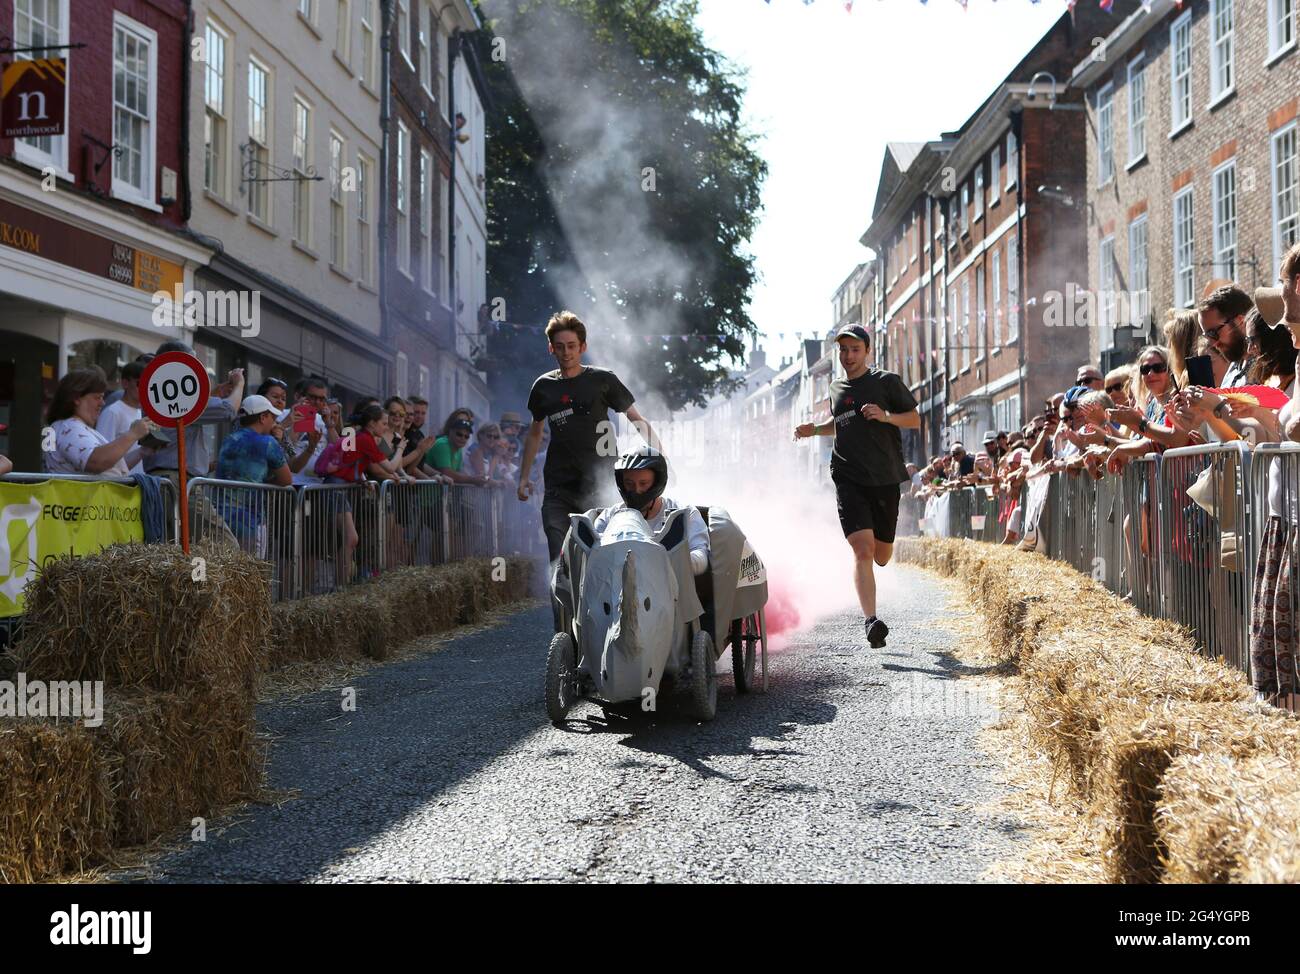 Le défi Micklegate Soapbox 2019, une course annuelle de chariots à York, dans le Yorkshire, en Angleterre. La course implique la construction de chariots fabriqués à la main par les habitants de la région. Banque D'Images